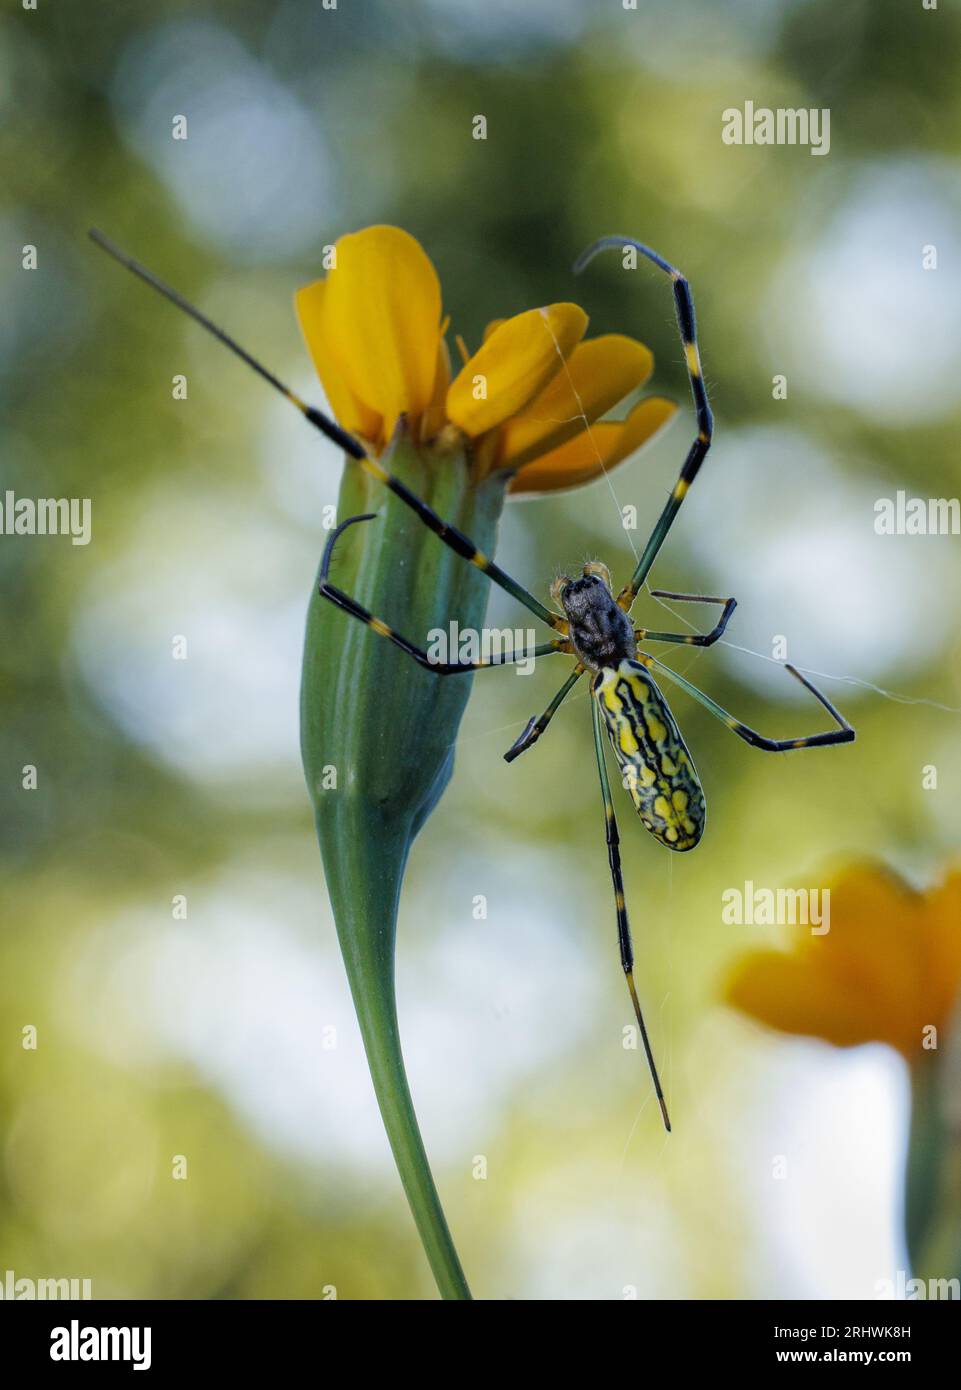 Araignée de Joro (Trichonephila clavata) - Comté de Hall, Géorgie. Une araignée joro femelle construit une toile en utilisant la floraison d'une fleur de souci. Banque D'Images